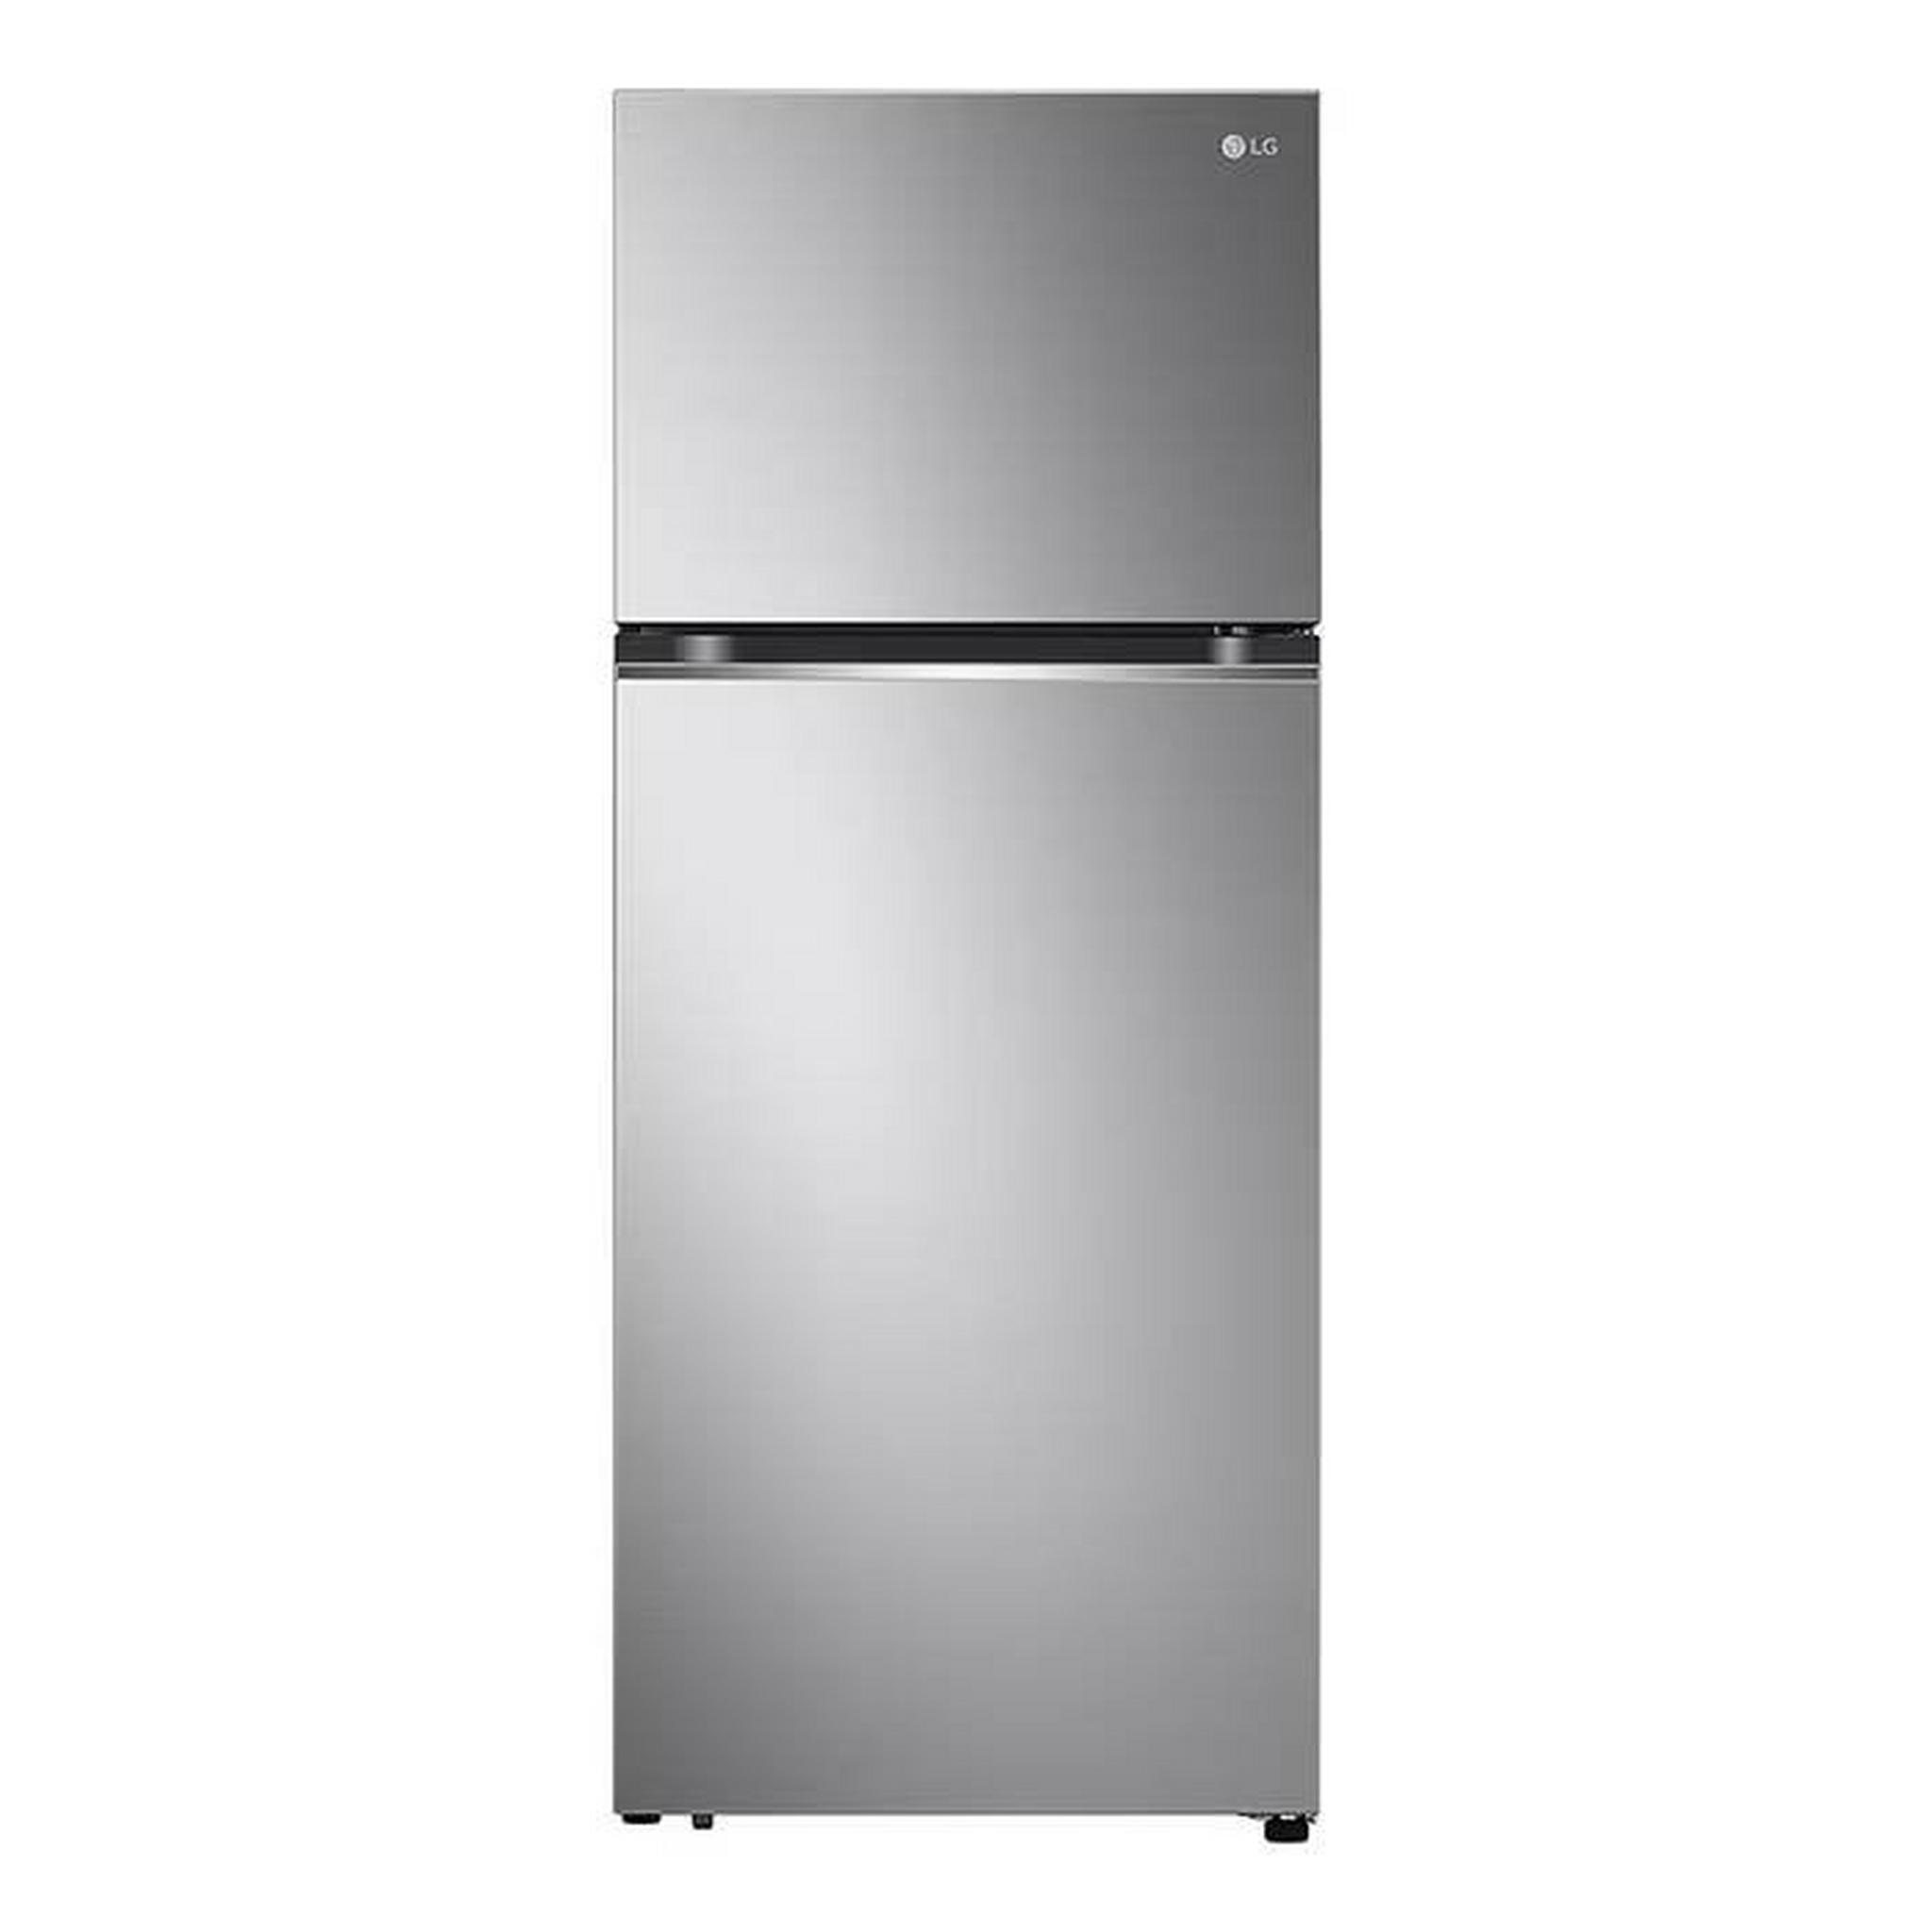 LG Top Mount Refrigerator, 14CFT, 395-Liters, GN-B522PLGB - Sliver